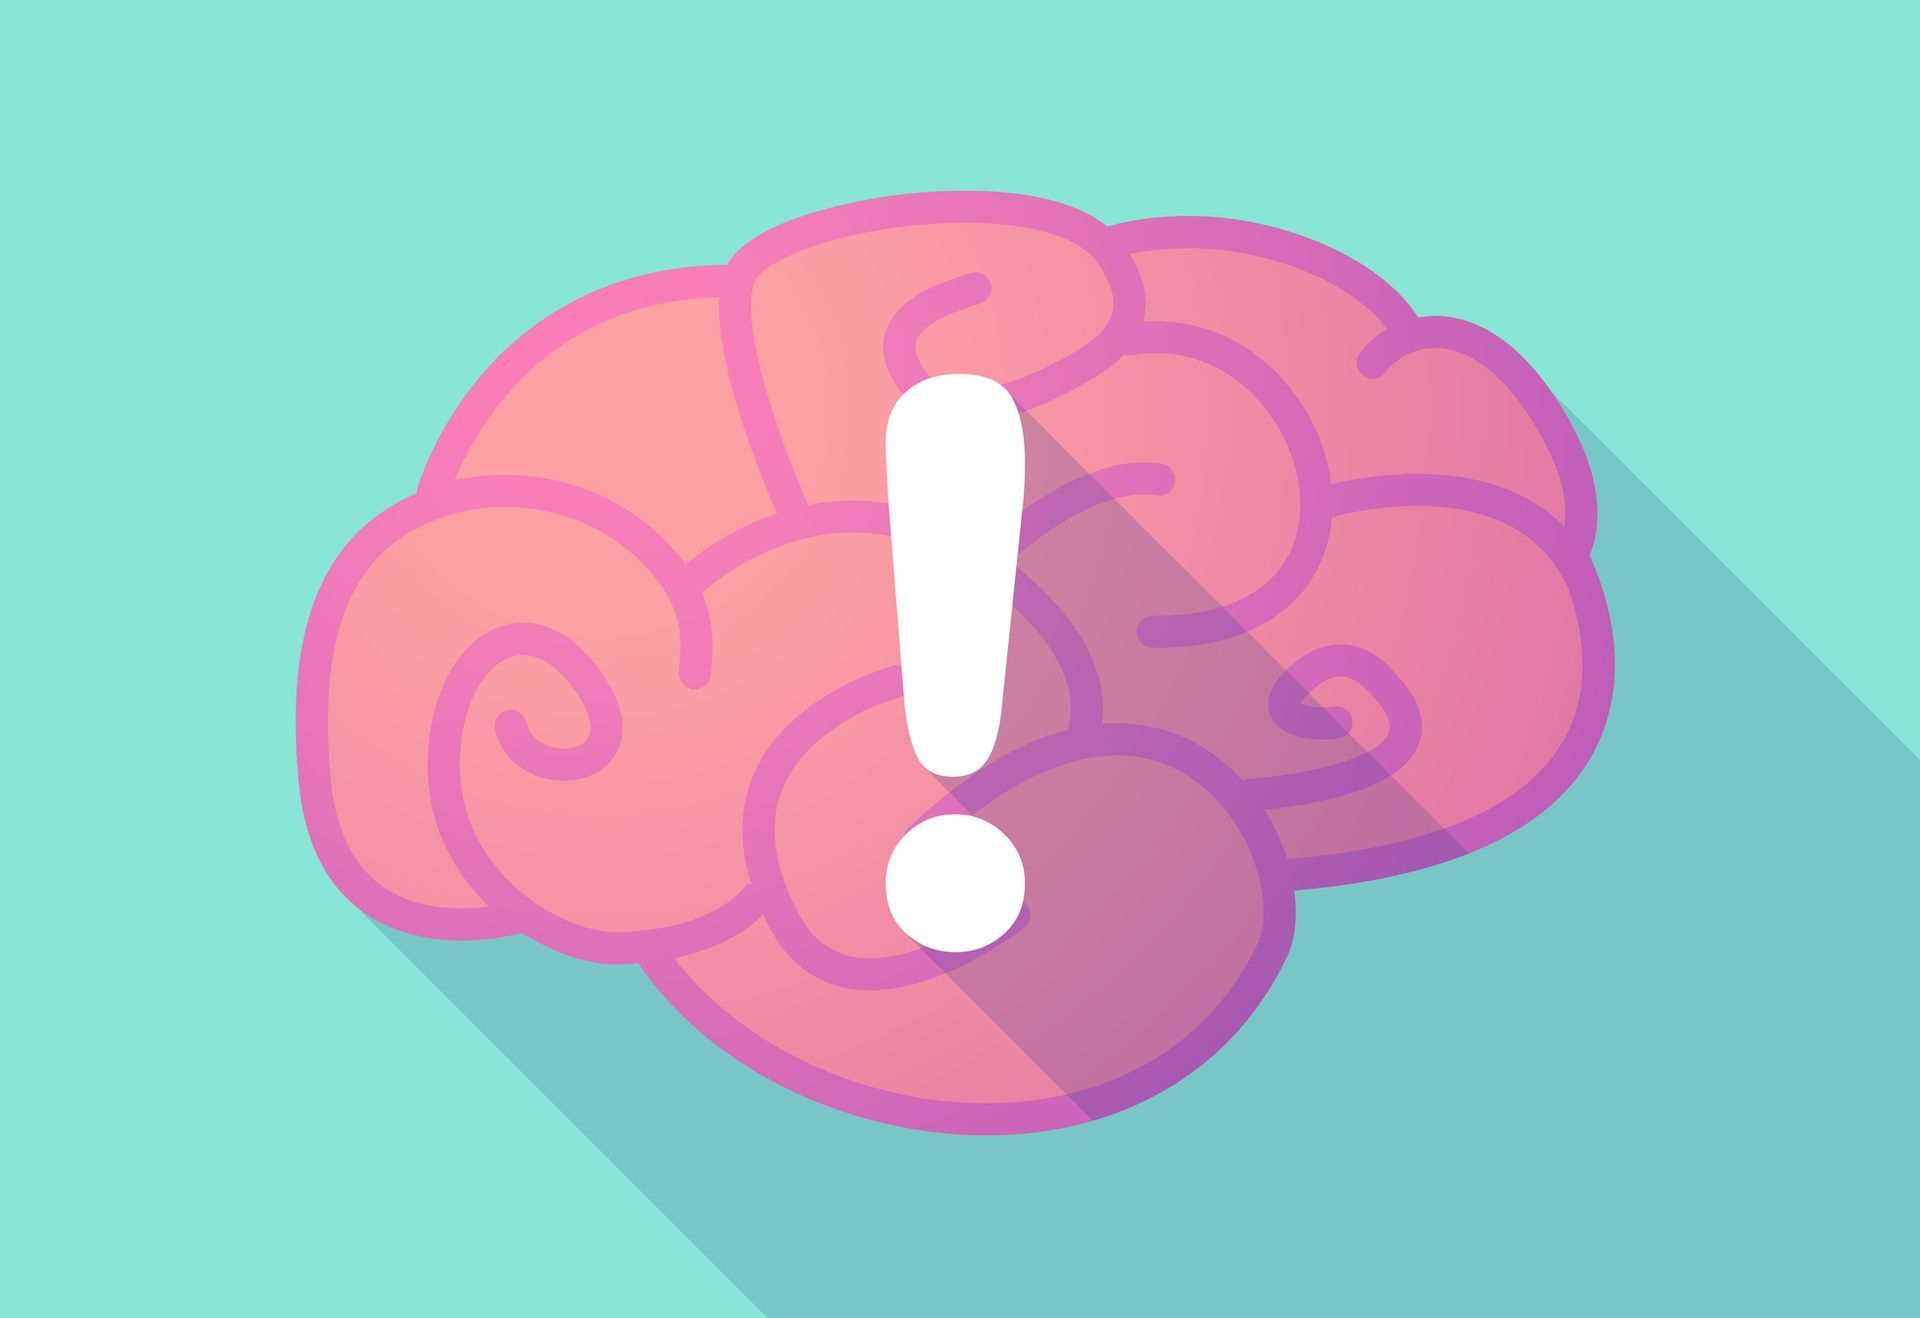 Illustratie van een brein met in het midden een uitroepteken als symbool voor een lezer die een moeilijke zin leest.